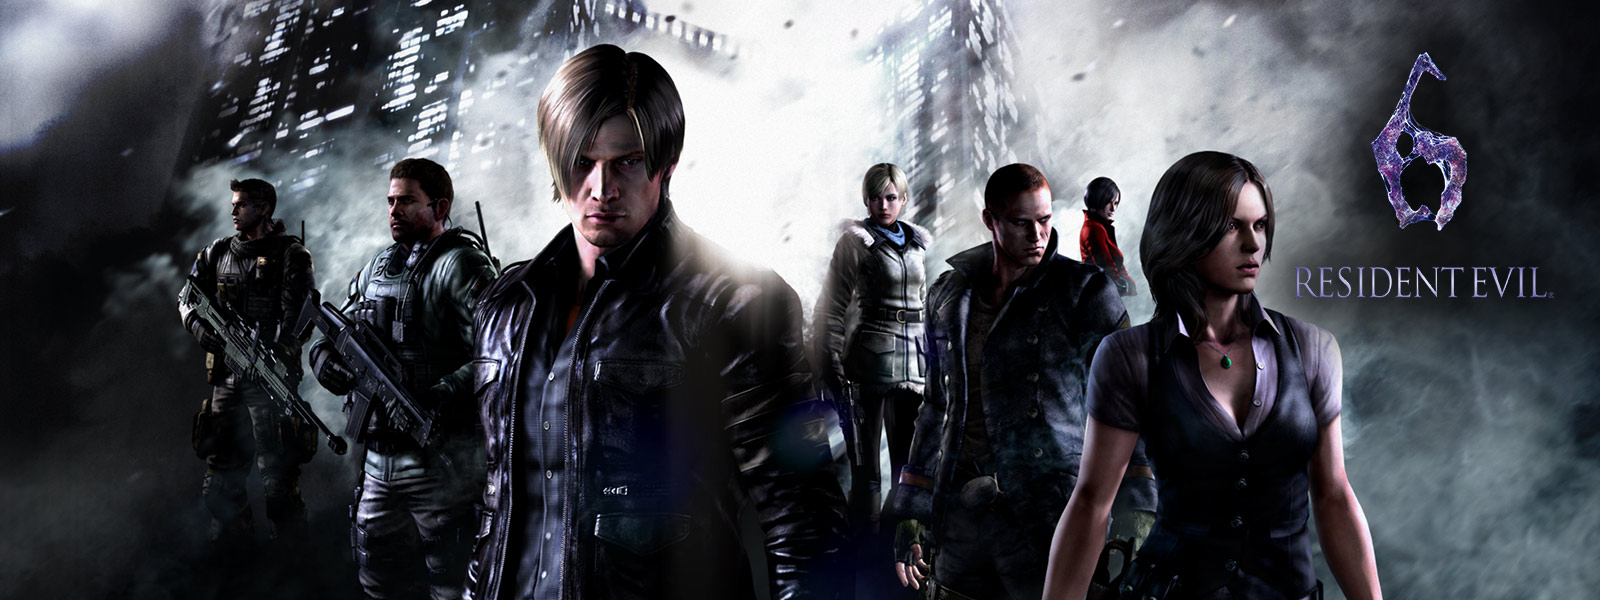 불길한 기운이 감도는 마천루를 배경으로 서 있는 Resident Evil 6의 모든 캐릭터